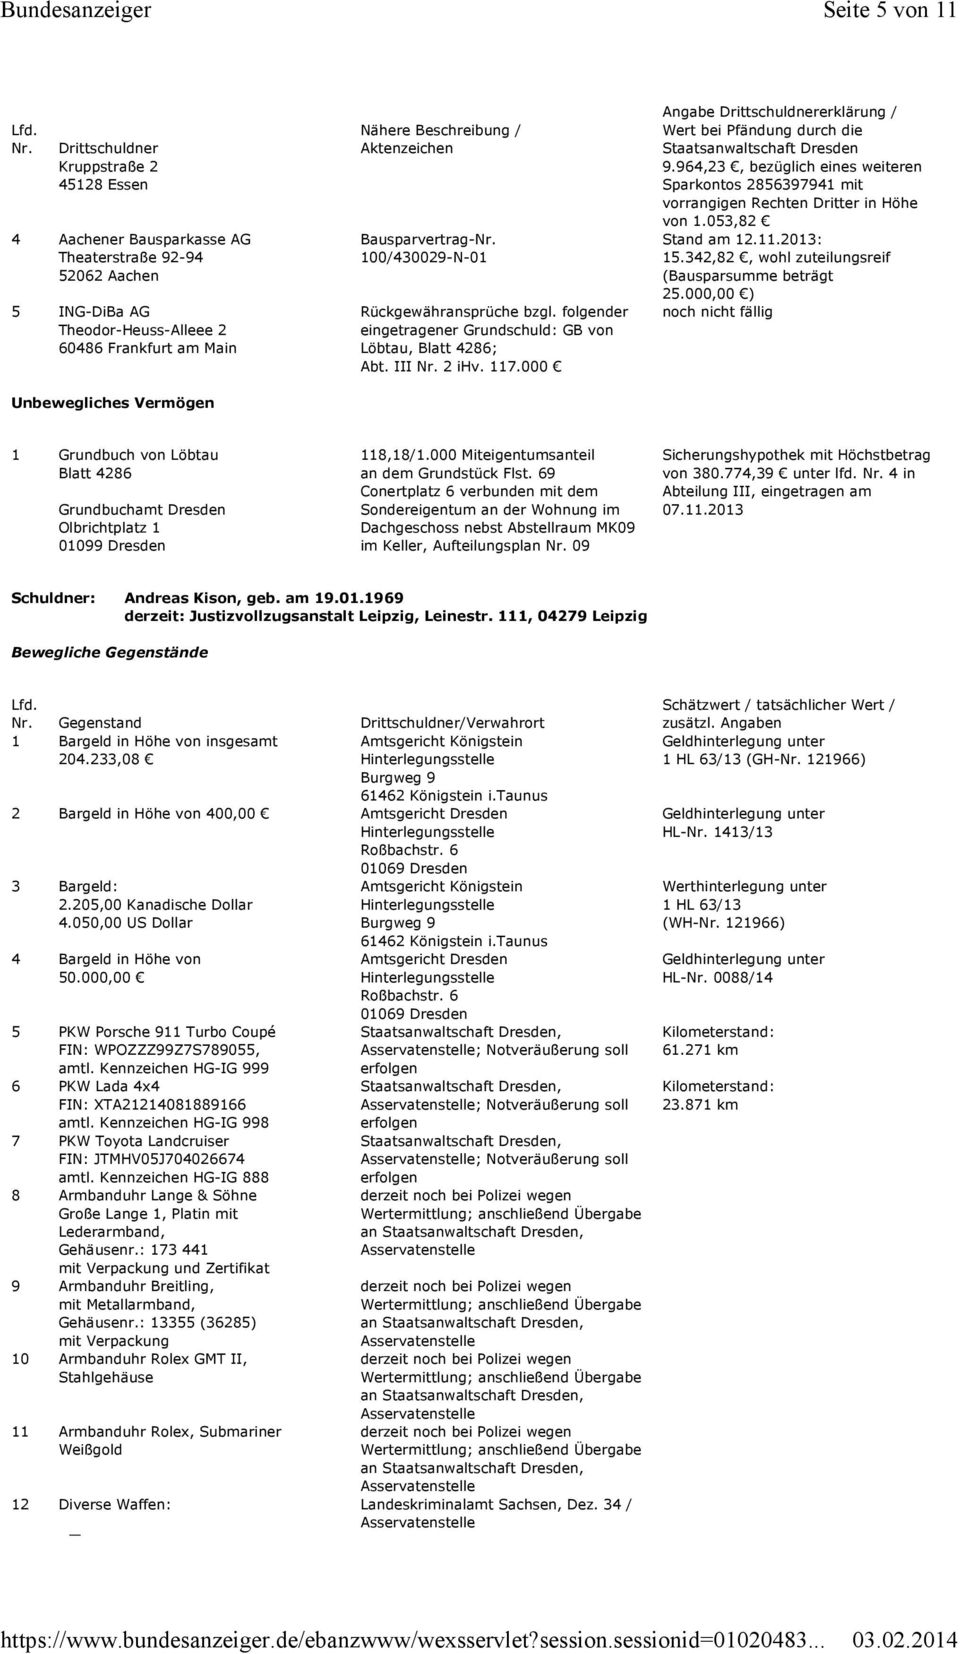 Bausparvertrag-Nr. 100/430029-N-01 Rückgewähransprüche bzgl. folgender eingetragener Grundschuld: GB von Löbtau, Blatt 4286; Abt. III Nr. 2 ihv. 117.